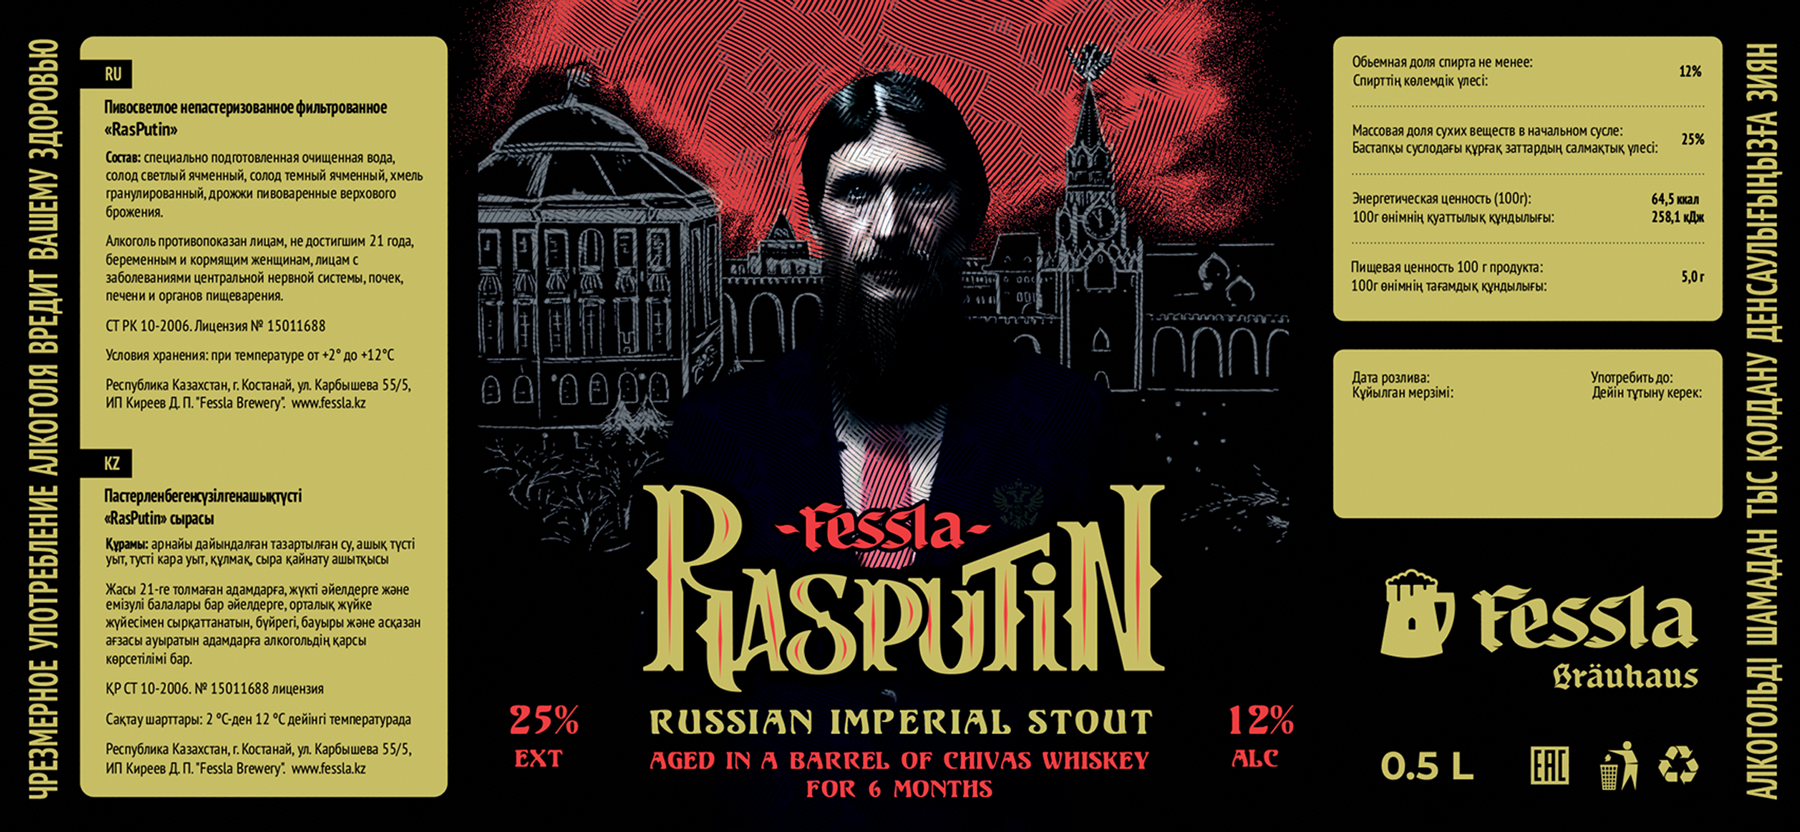 Rasputin5